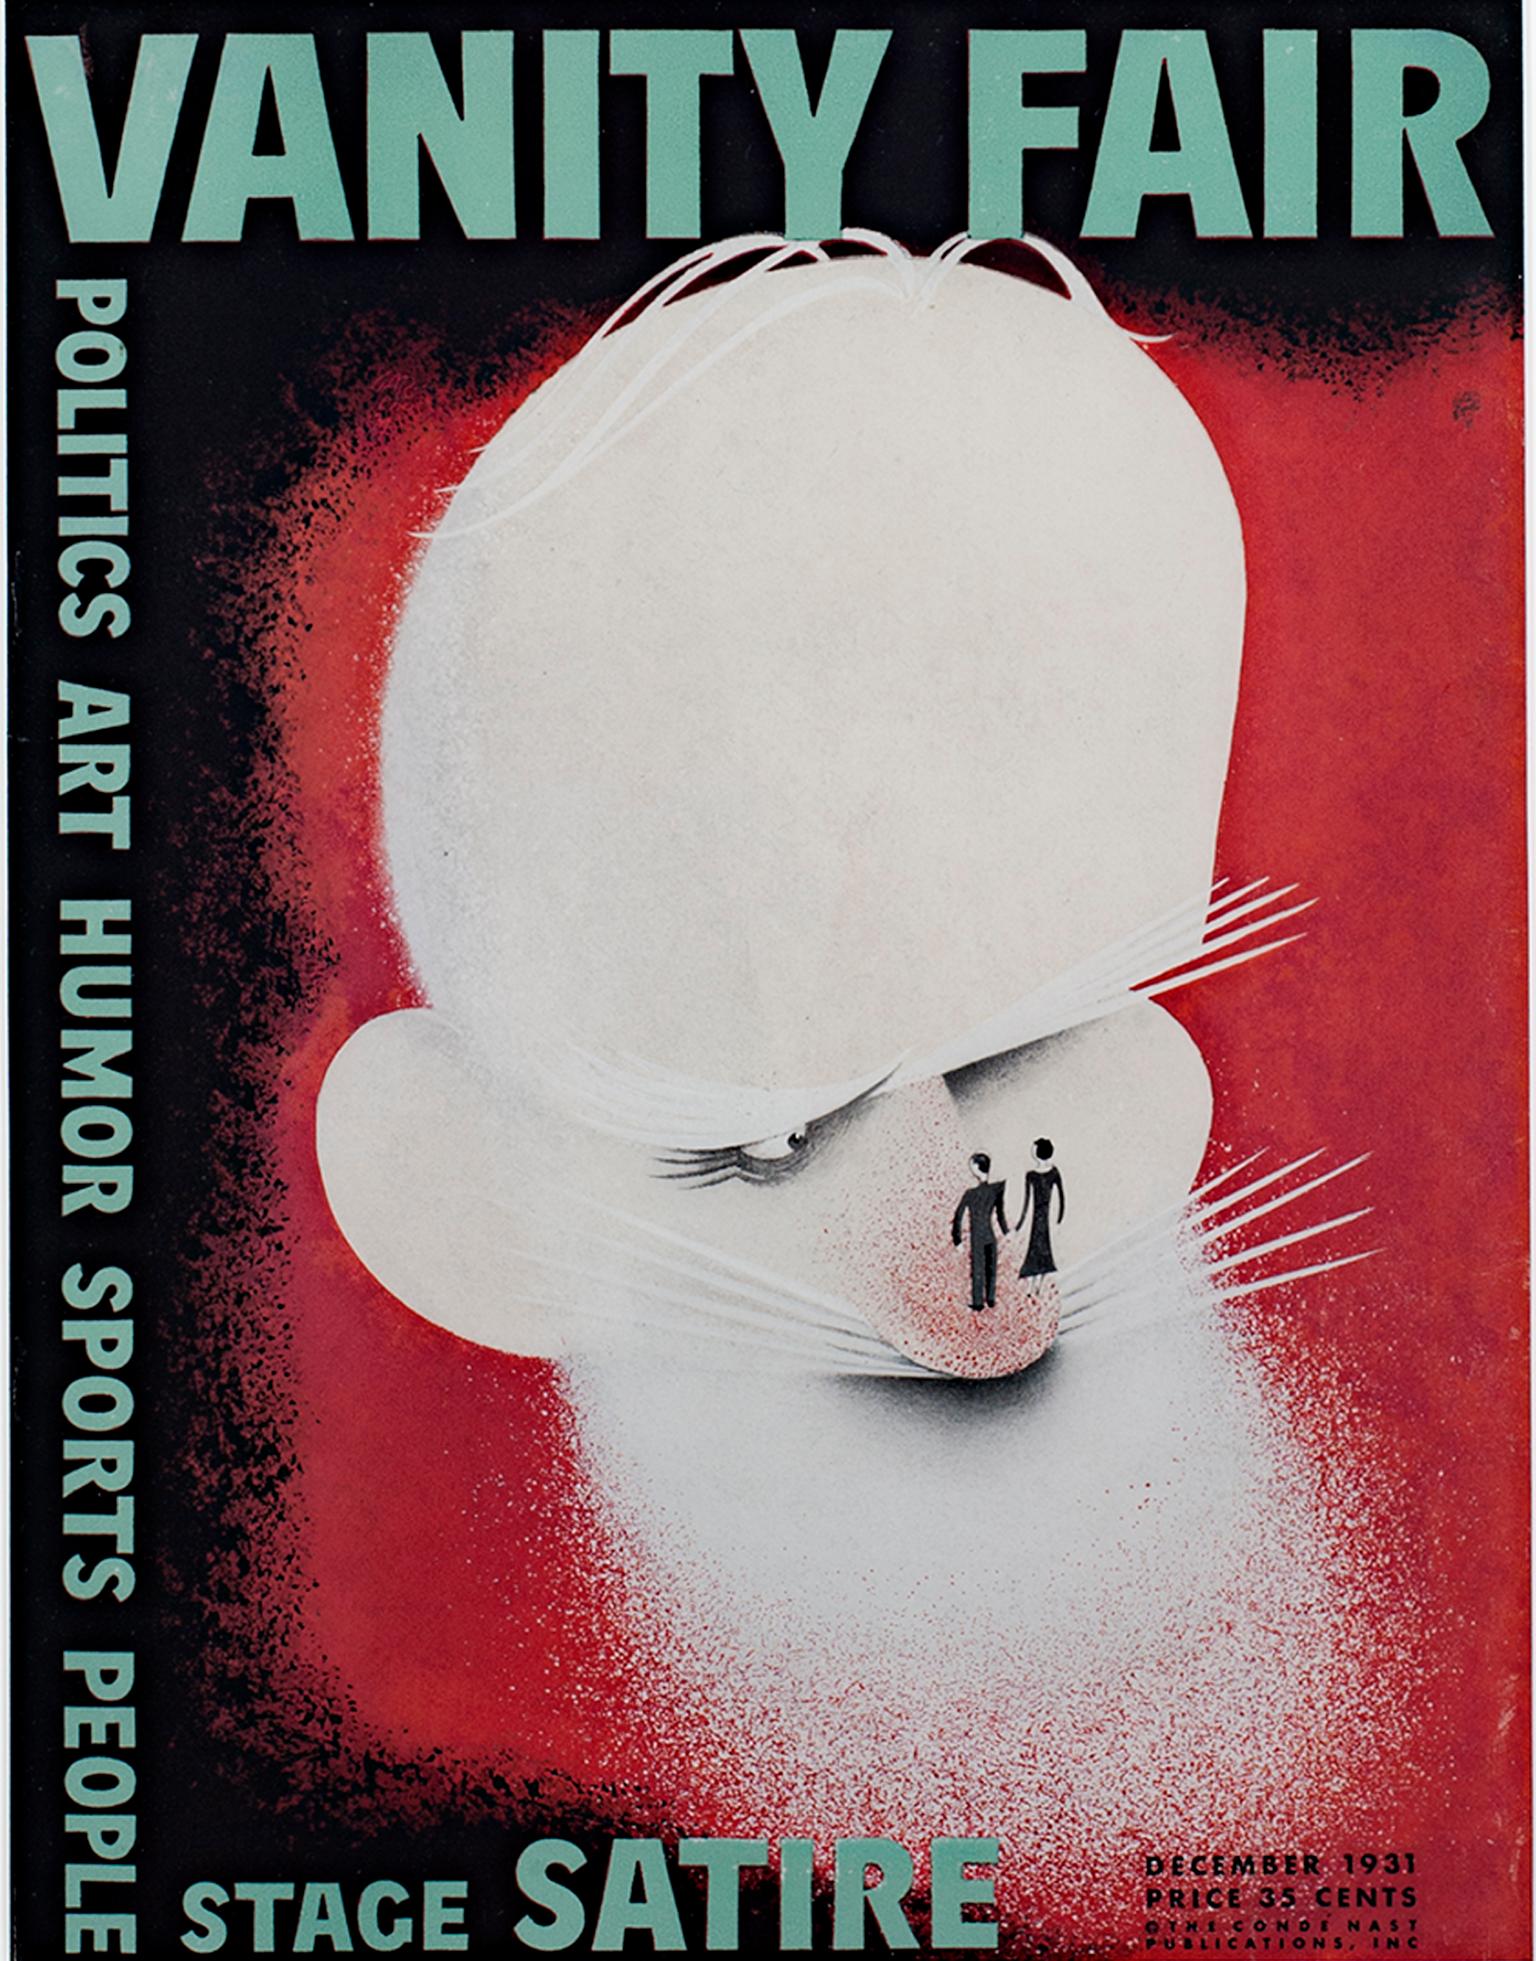 Cette lithographie recto-verso de Paolo Garretto présente au recto une couverture de Vanity Fair intitulée "The Face Off" et au verso une publicité pour les cigarettes Camel. Il a été publié en décembre 1931. 

12 1/2" x 9 1/2" art
Cadre 20 5/8" x